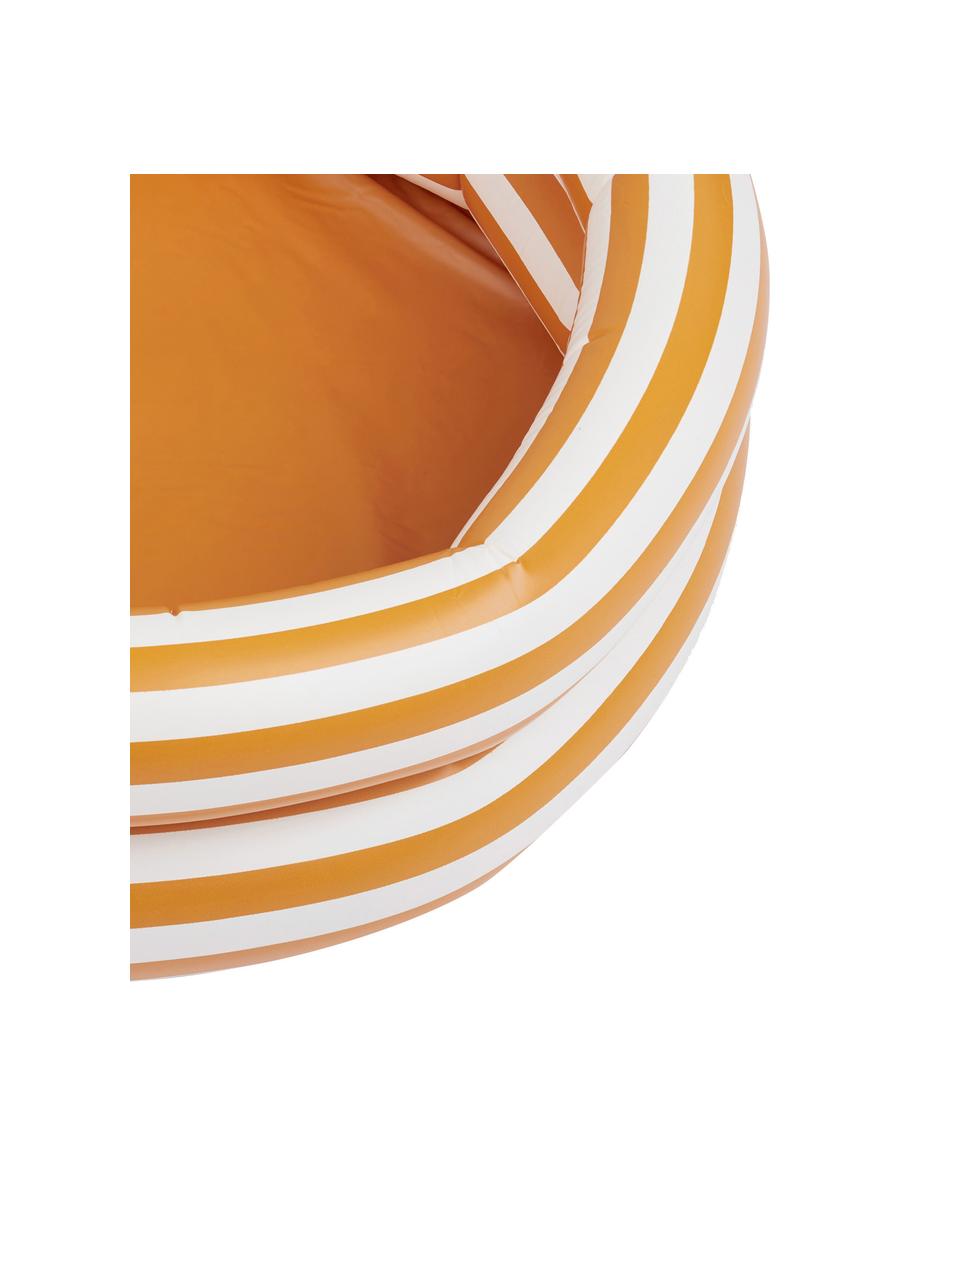 Brouzdaliště Leonore, Umělá hmota (PCV), Oranžová, bílá, černá, Ø 80 cm, V 20 cm